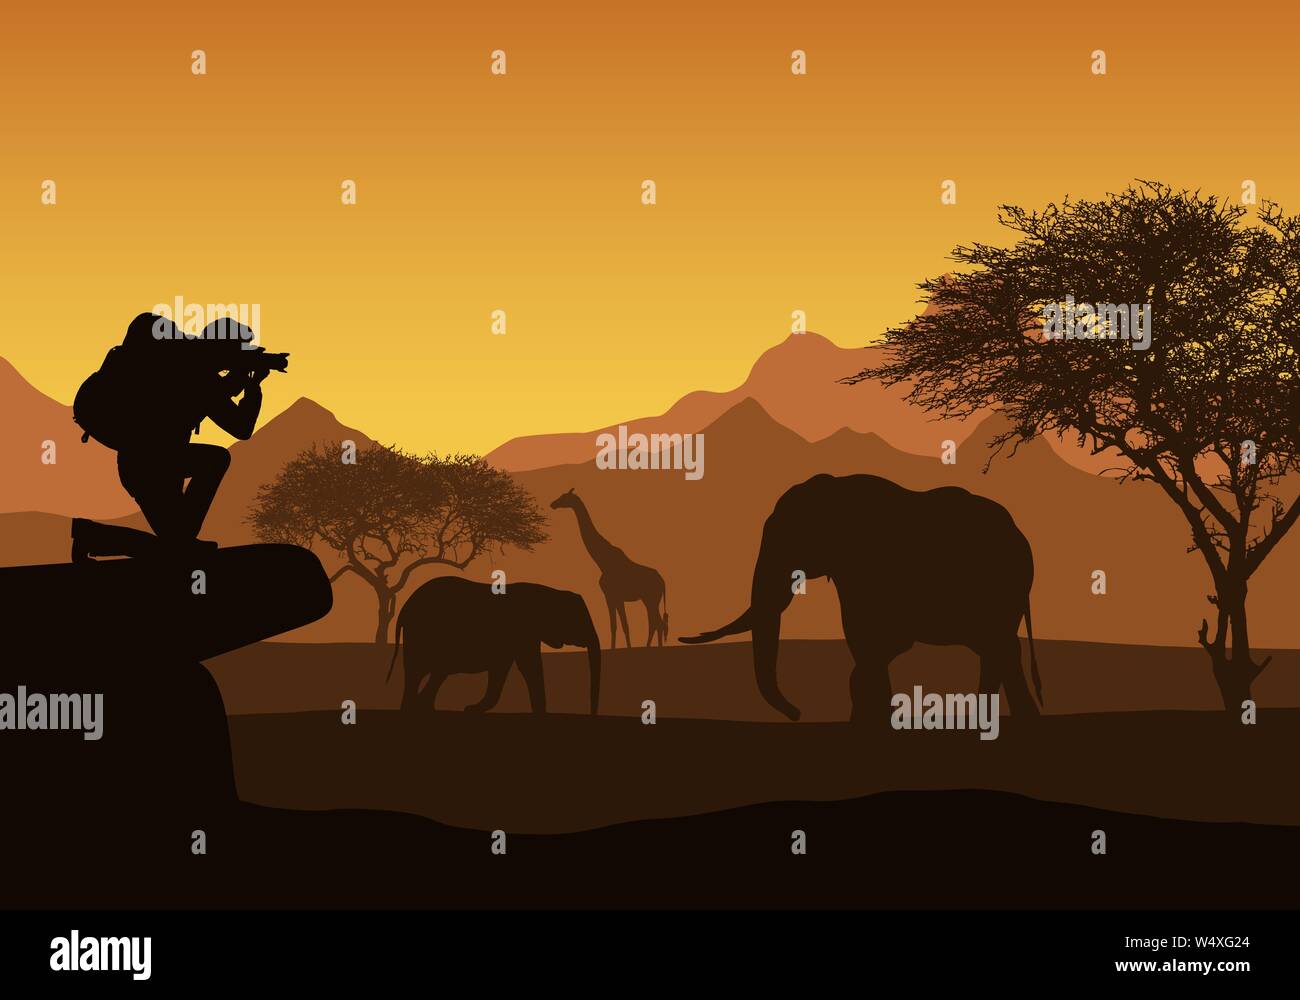 Illustrazione realistica di African Safari con il paesaggio di montagna, alberi ed elefanti e giraffe. Turistico con zaino prende di fotografare gli animali Illustrazione Vettoriale